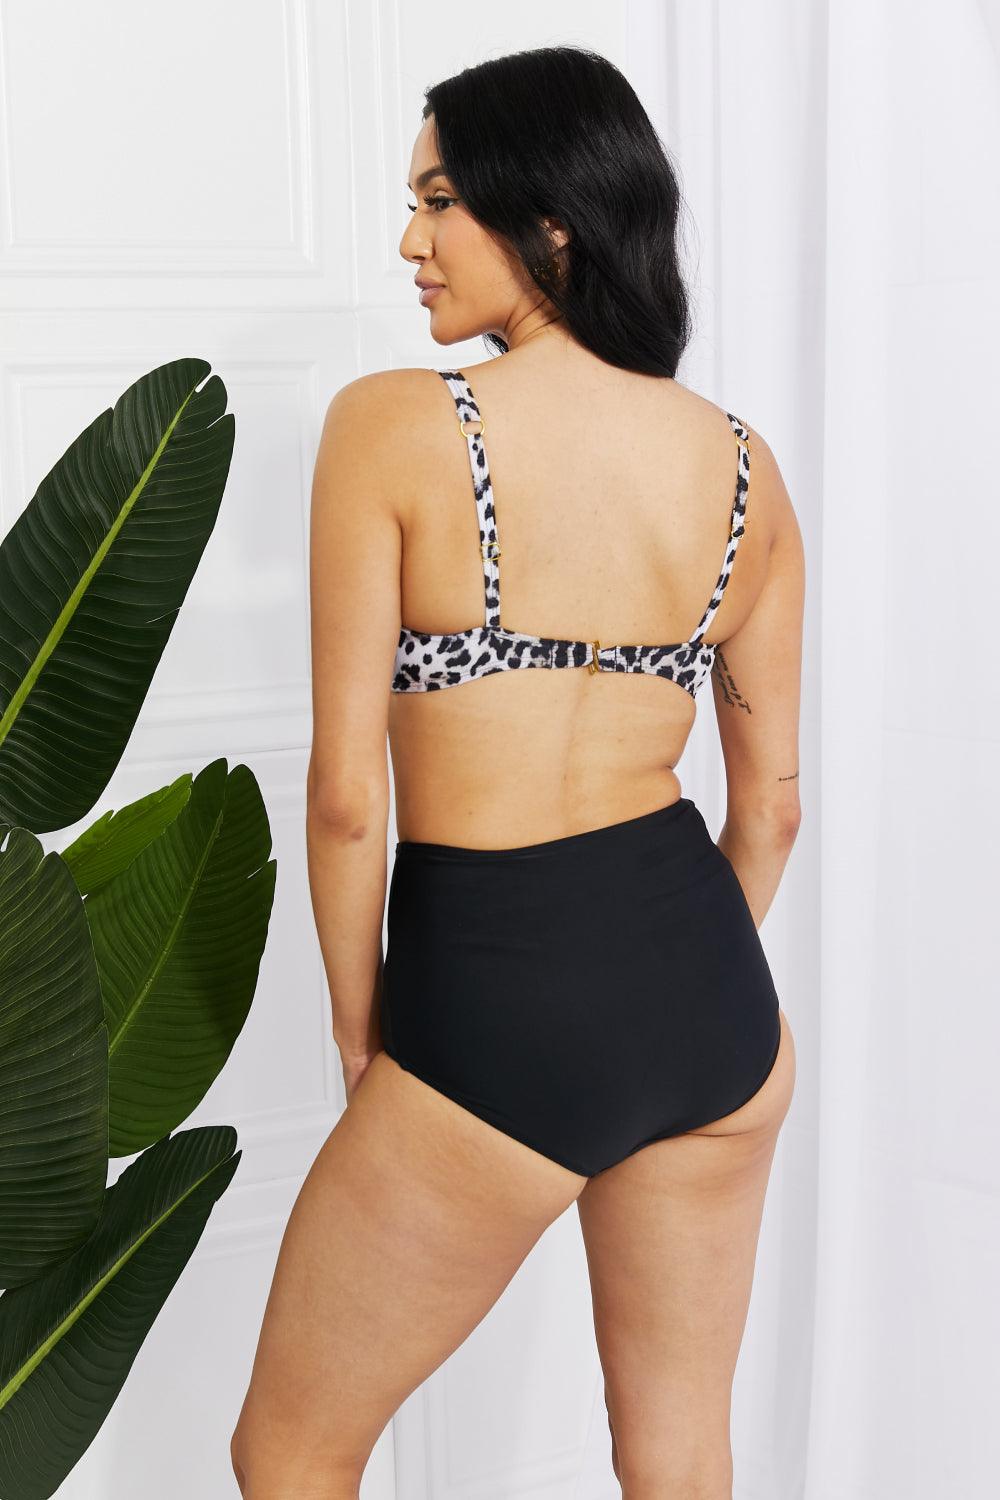 Marina West Swim Take A Dip Twist High-Rise Bikini in Leopard - Glamorous Boutique USA L.L.C.